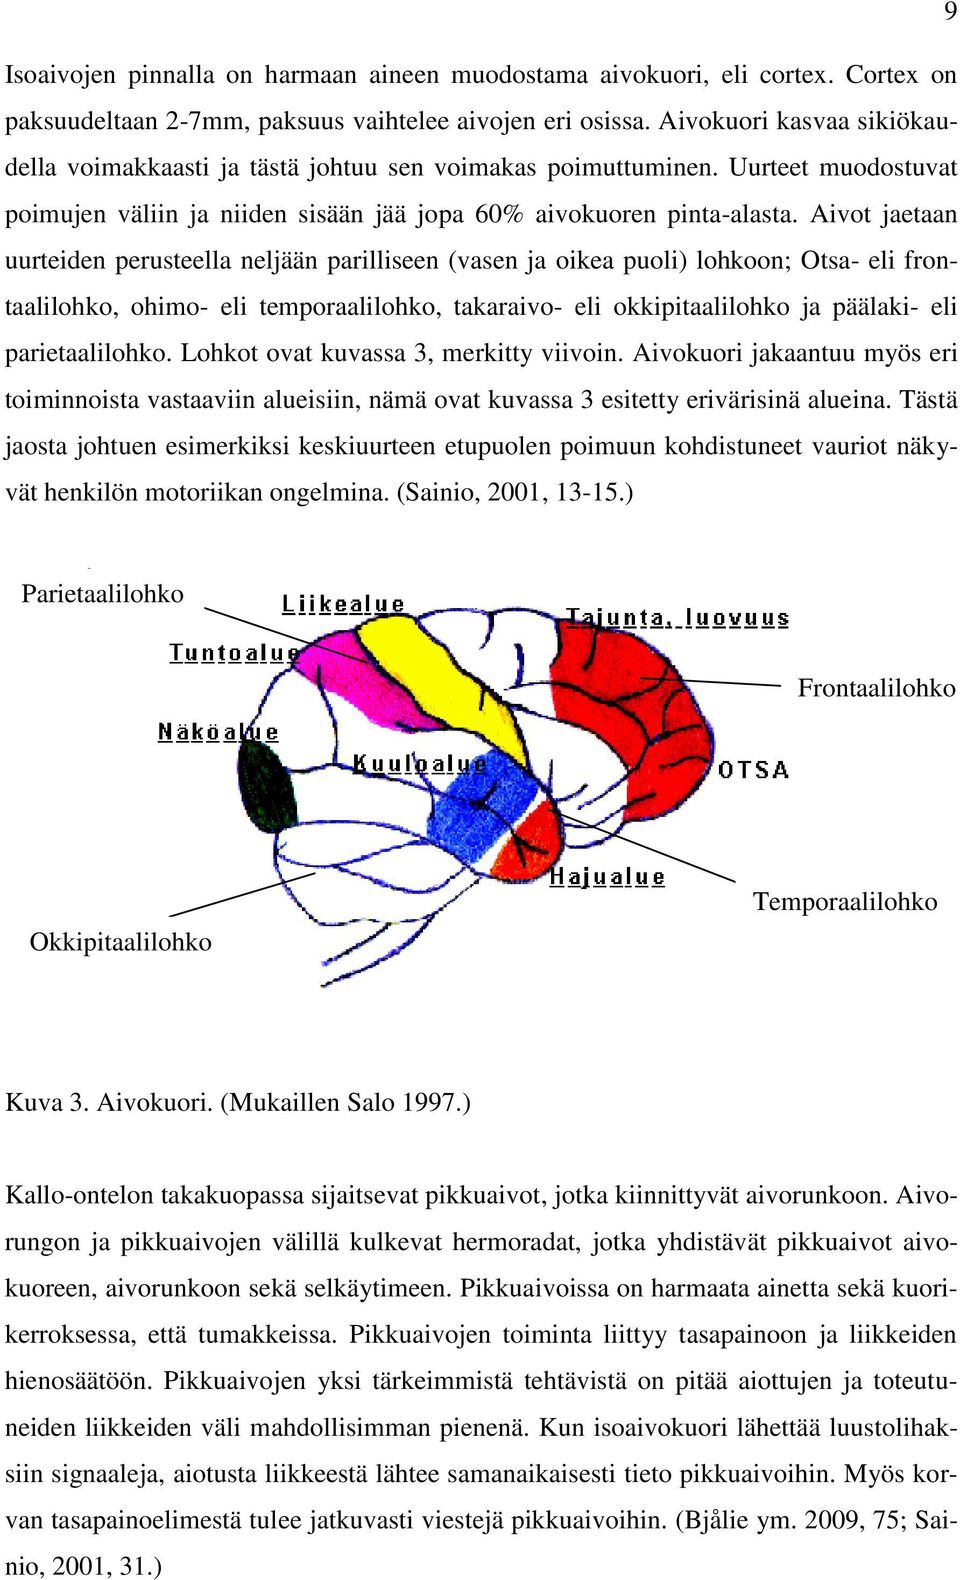 Aivot jaetaan uurteiden perusteella neljään parilliseen (vasen ja oikea puoli) lohkoon; Otsa- eli frontaalilohko, ohimo- eli temporaalilohko, takaraivo- eli okkipitaalilohko ja päälaki- eli